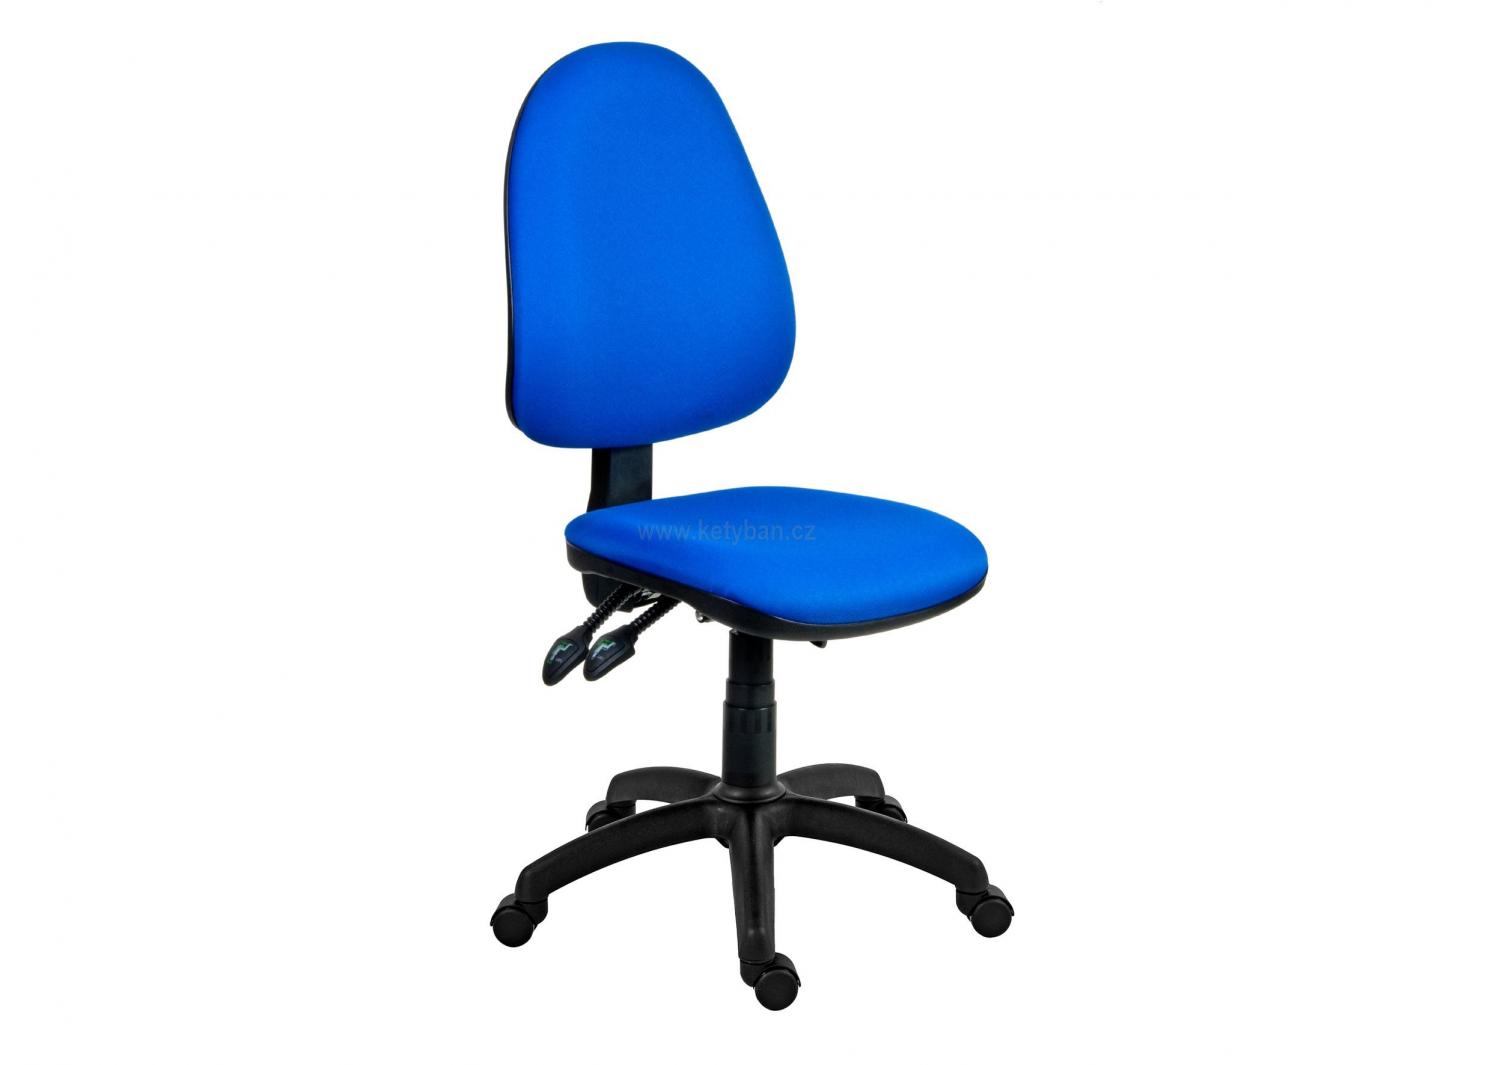 Pracovní kancelářská židle Panther Asyn